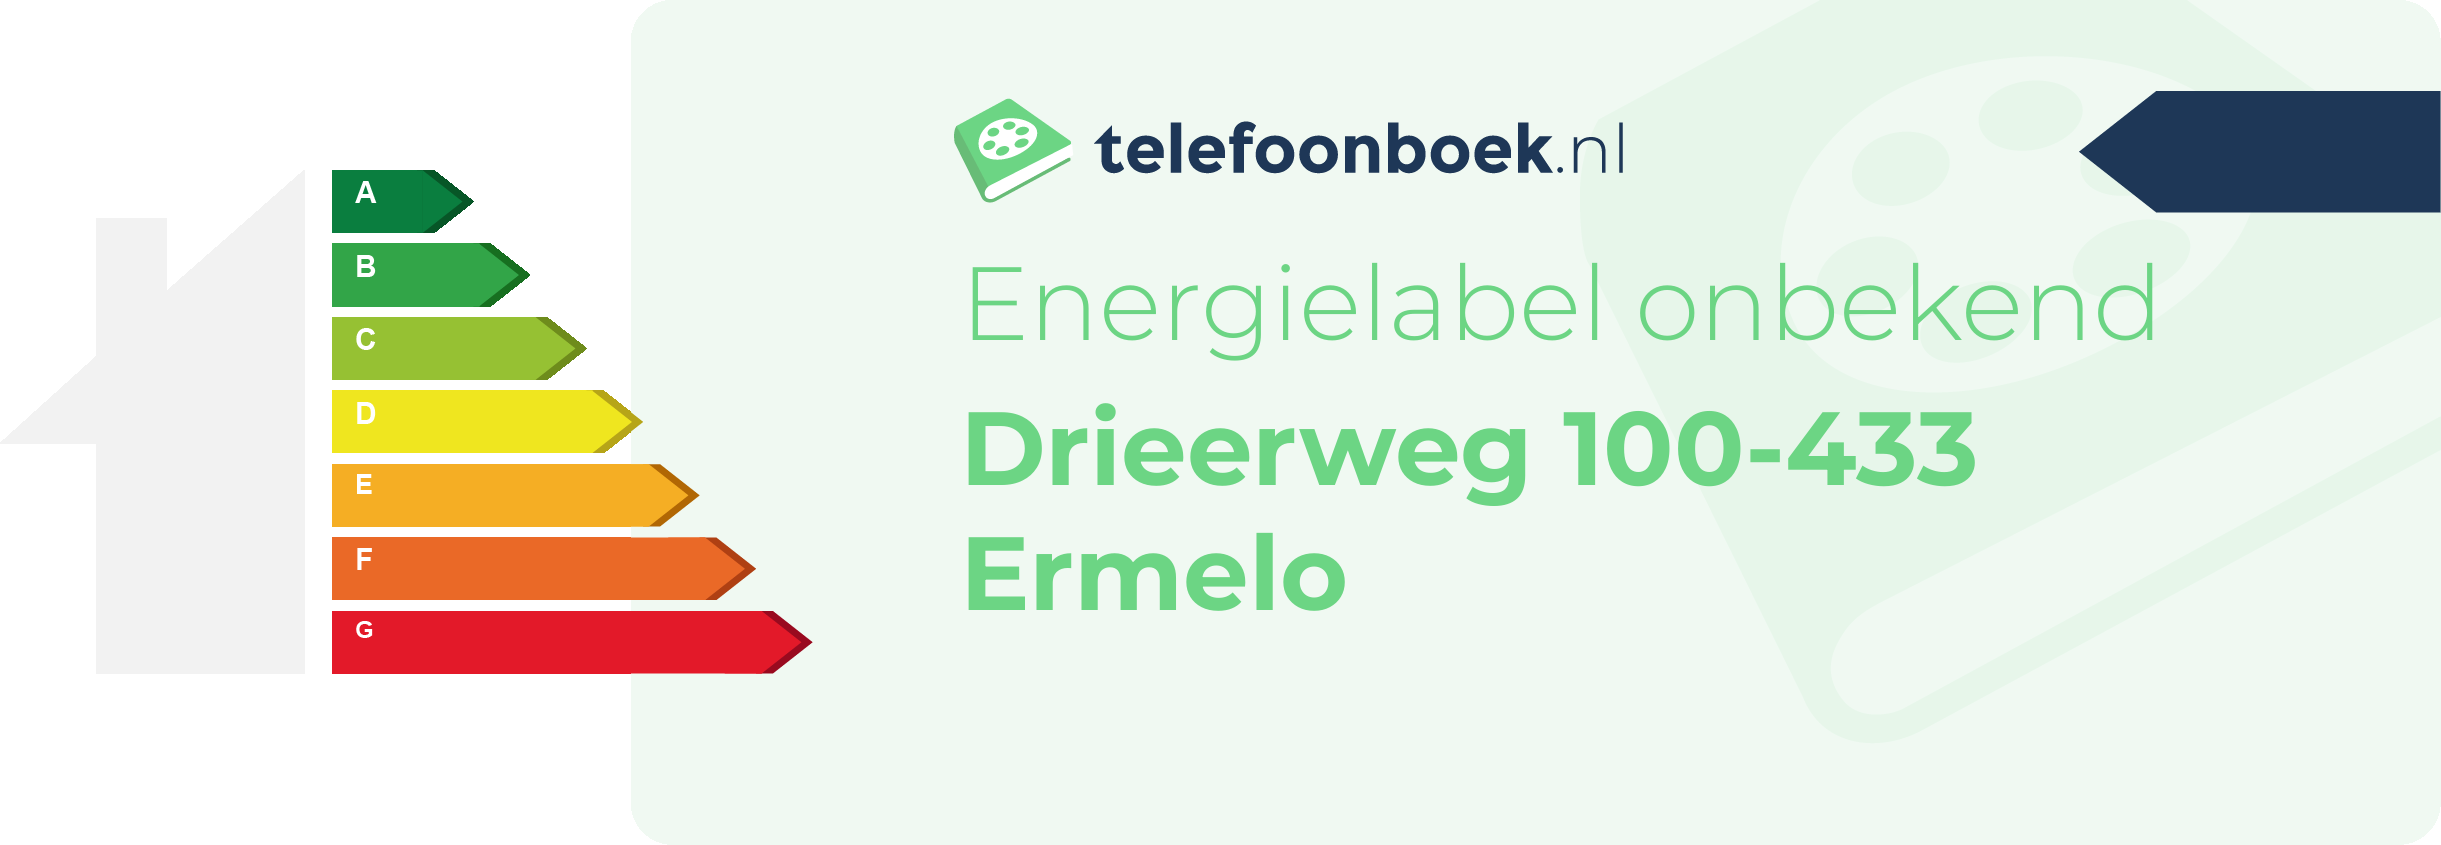 Energielabel Drieerweg 100-433 Ermelo